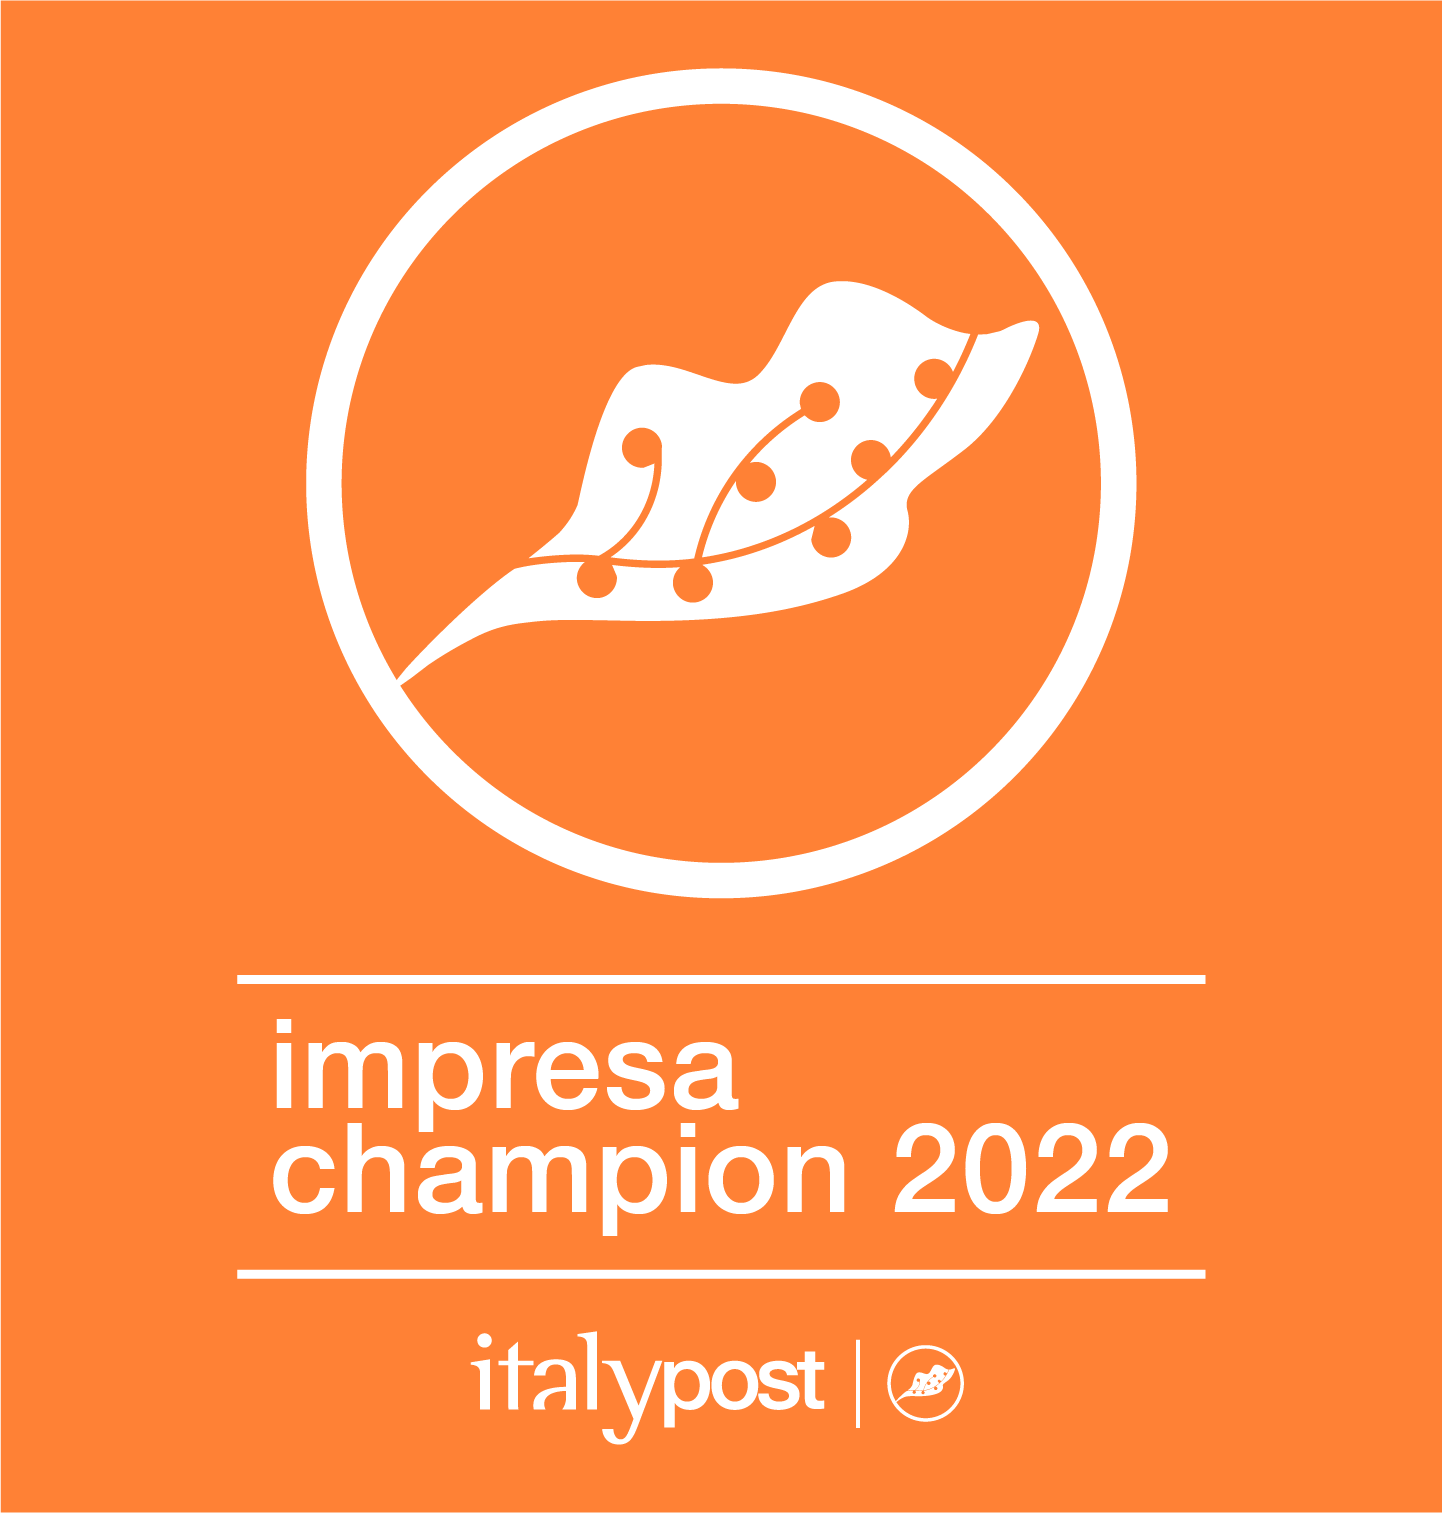 Confermato il titolo: Pietro Fiorentini è impresa Champion anche nel 2022